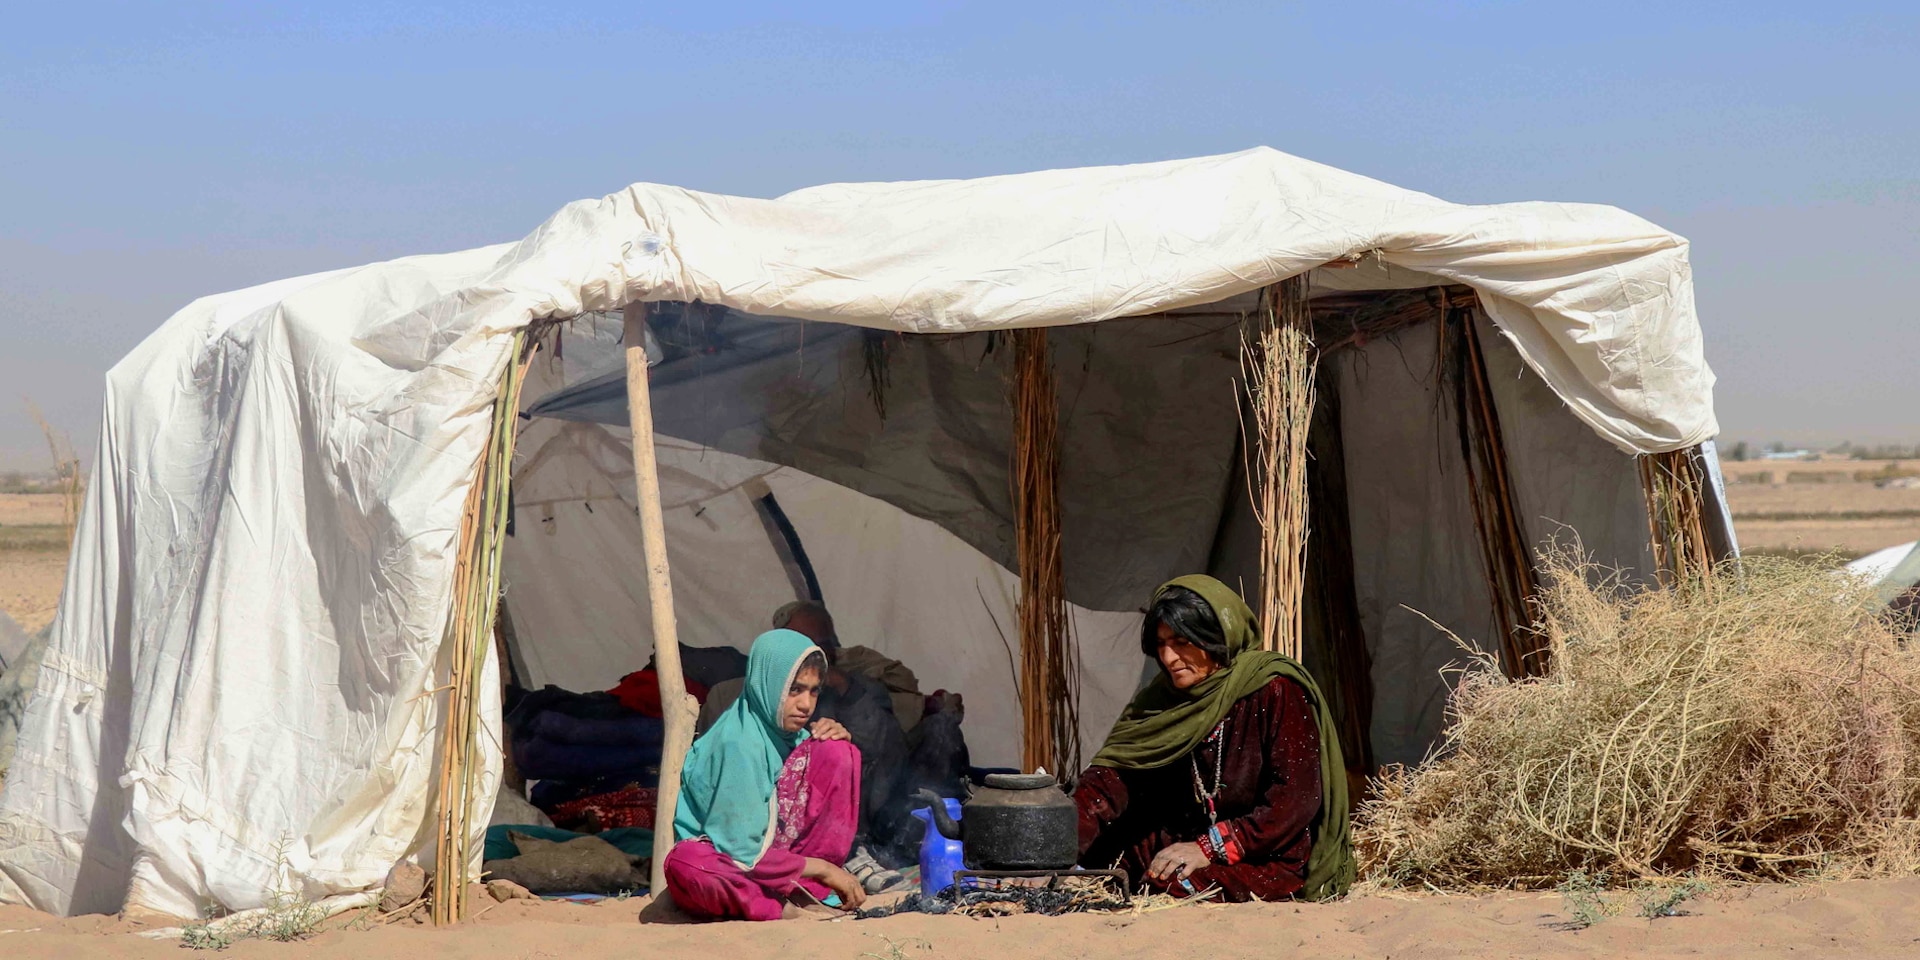 Une femme et une jeune fille sont assises sous une tente blanche sommaire dressée dans le désert.